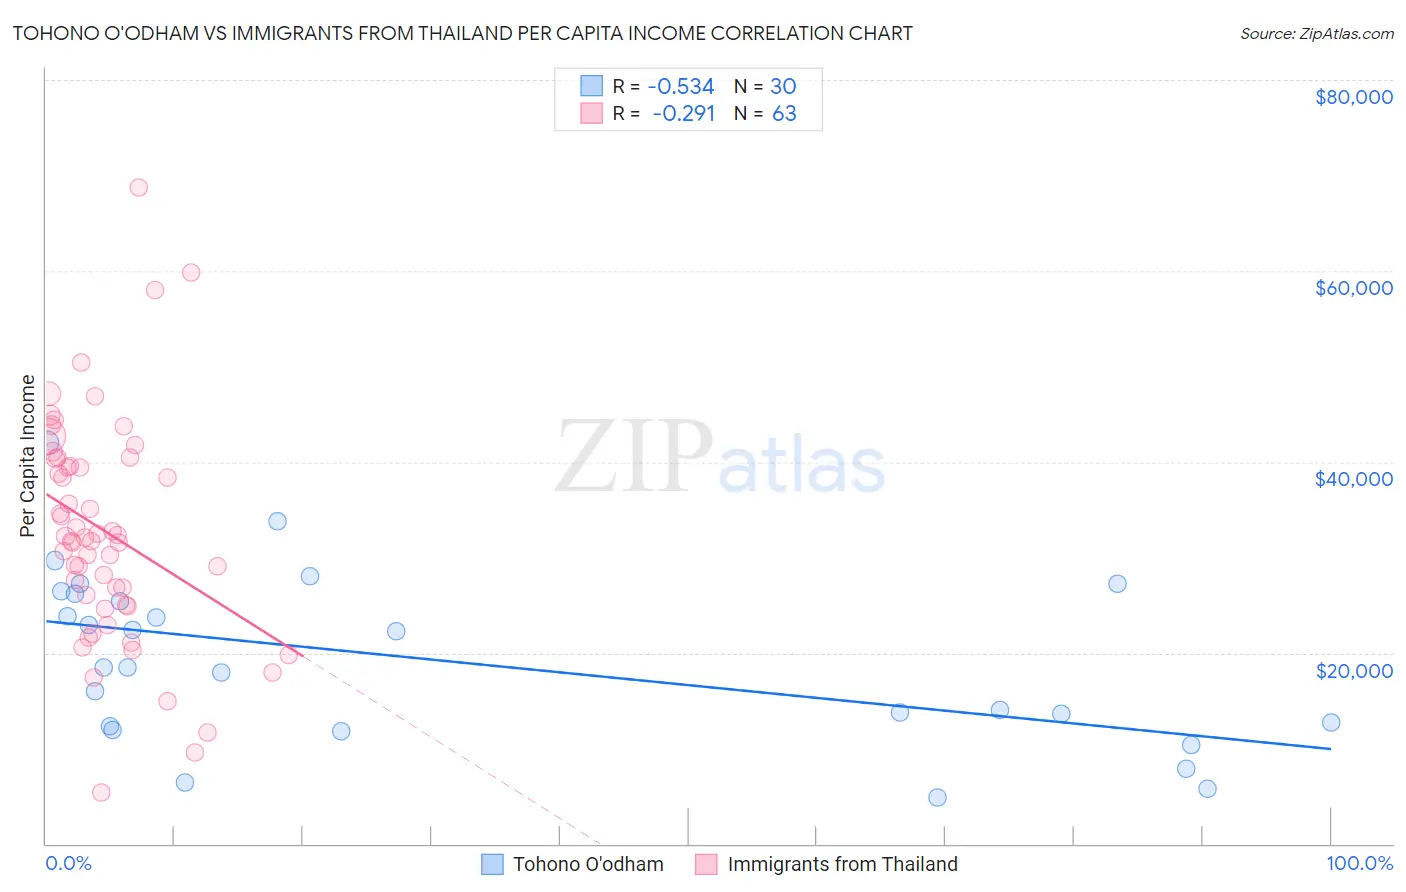 Tohono O'odham vs Immigrants from Thailand Per Capita Income